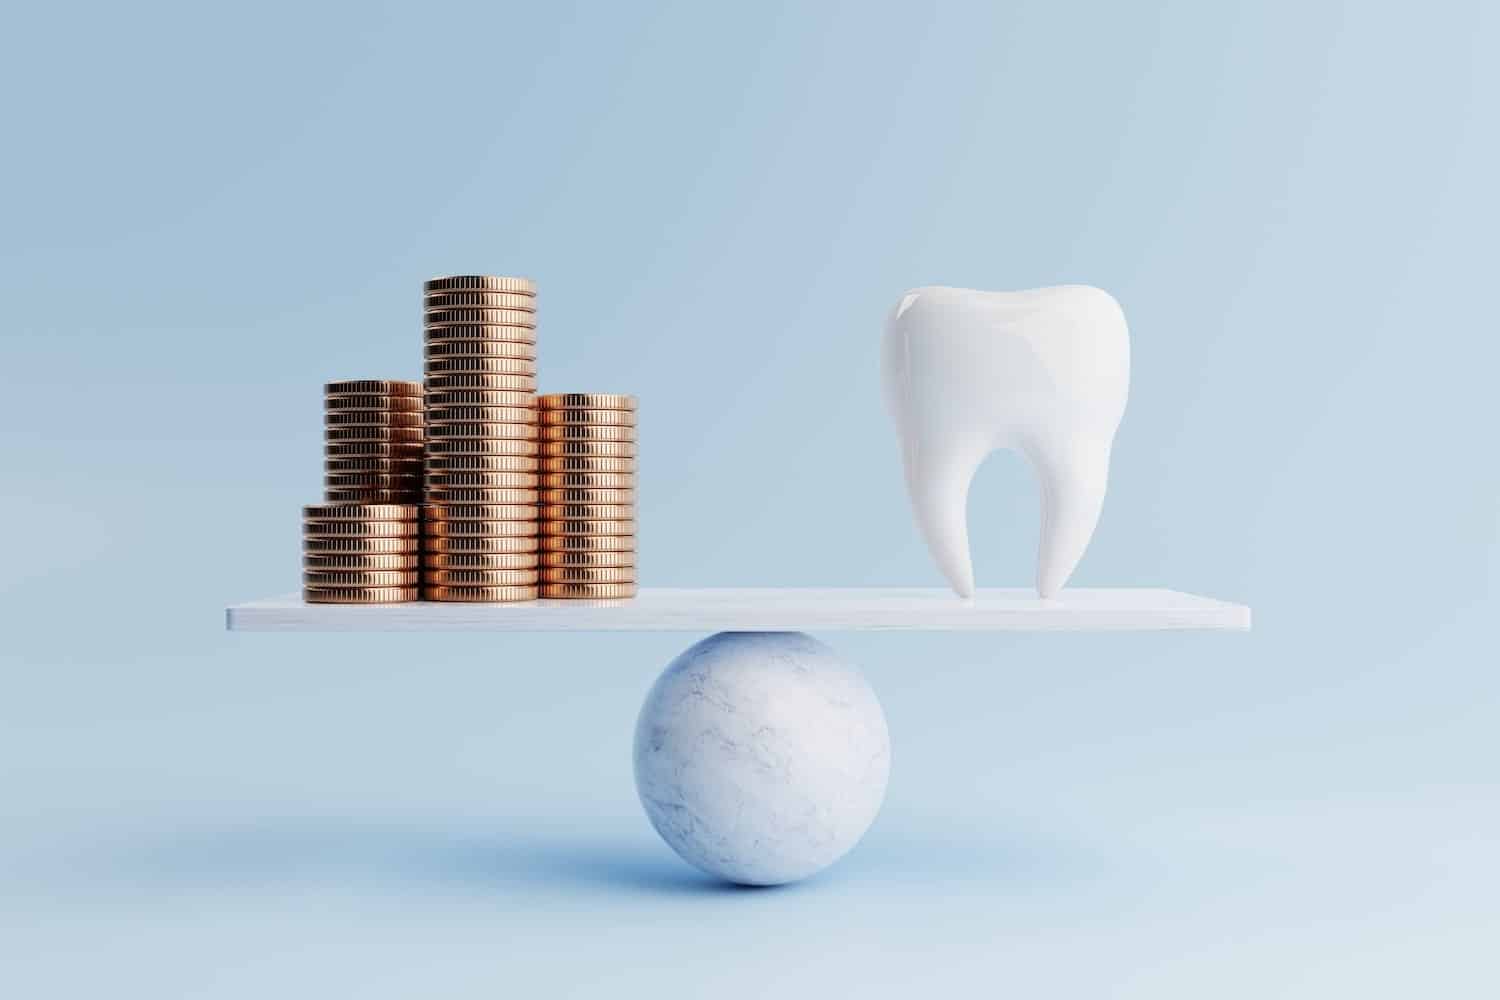 precios implantes dentales